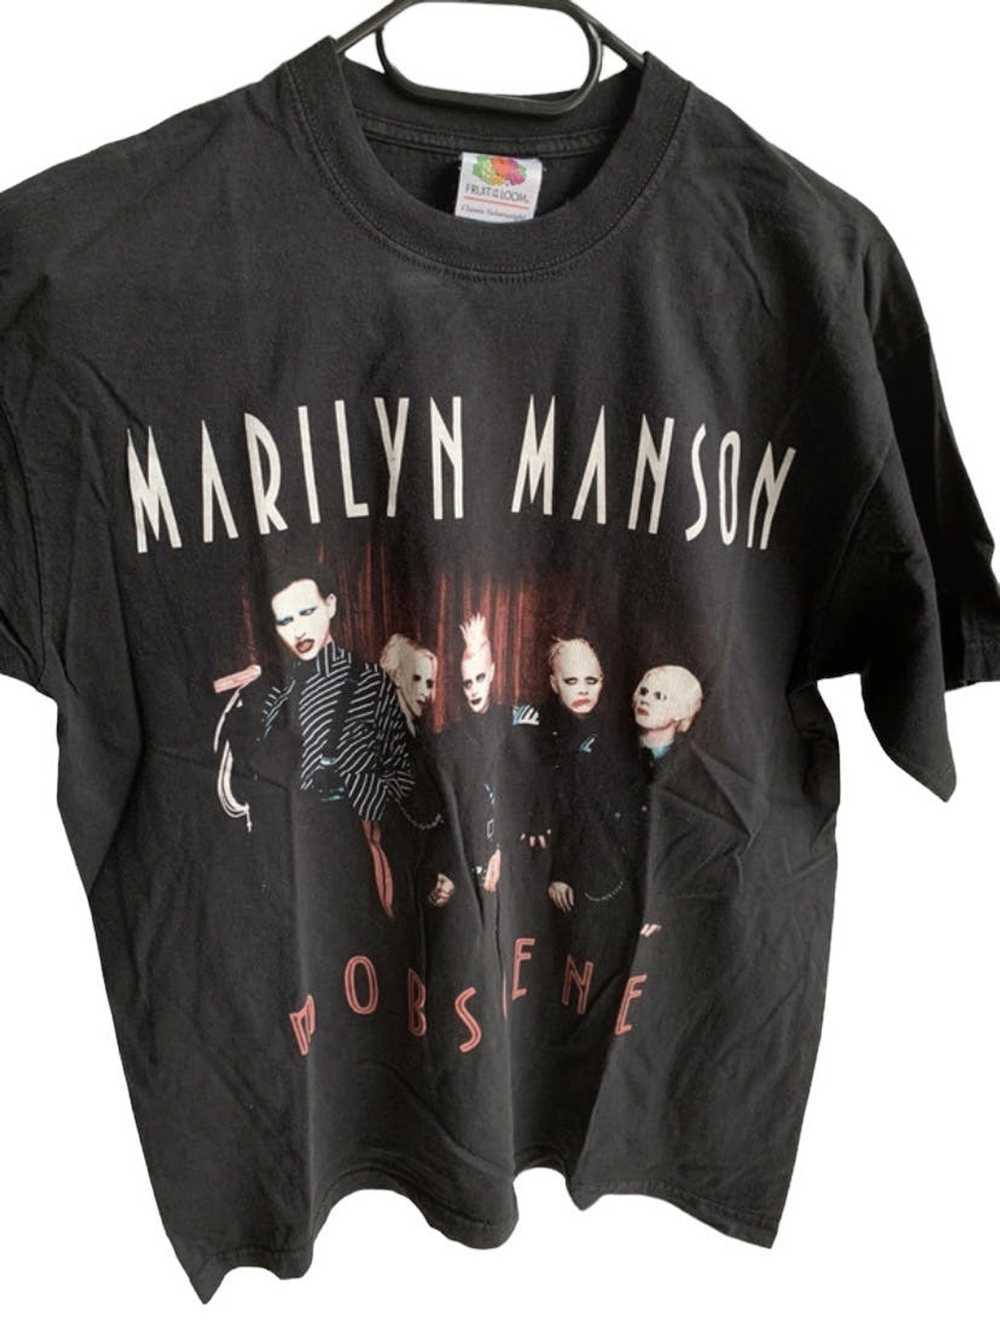 丸胴ボディです激レア Tシャツ 2003年製 マリリンマンソン marilyn manson